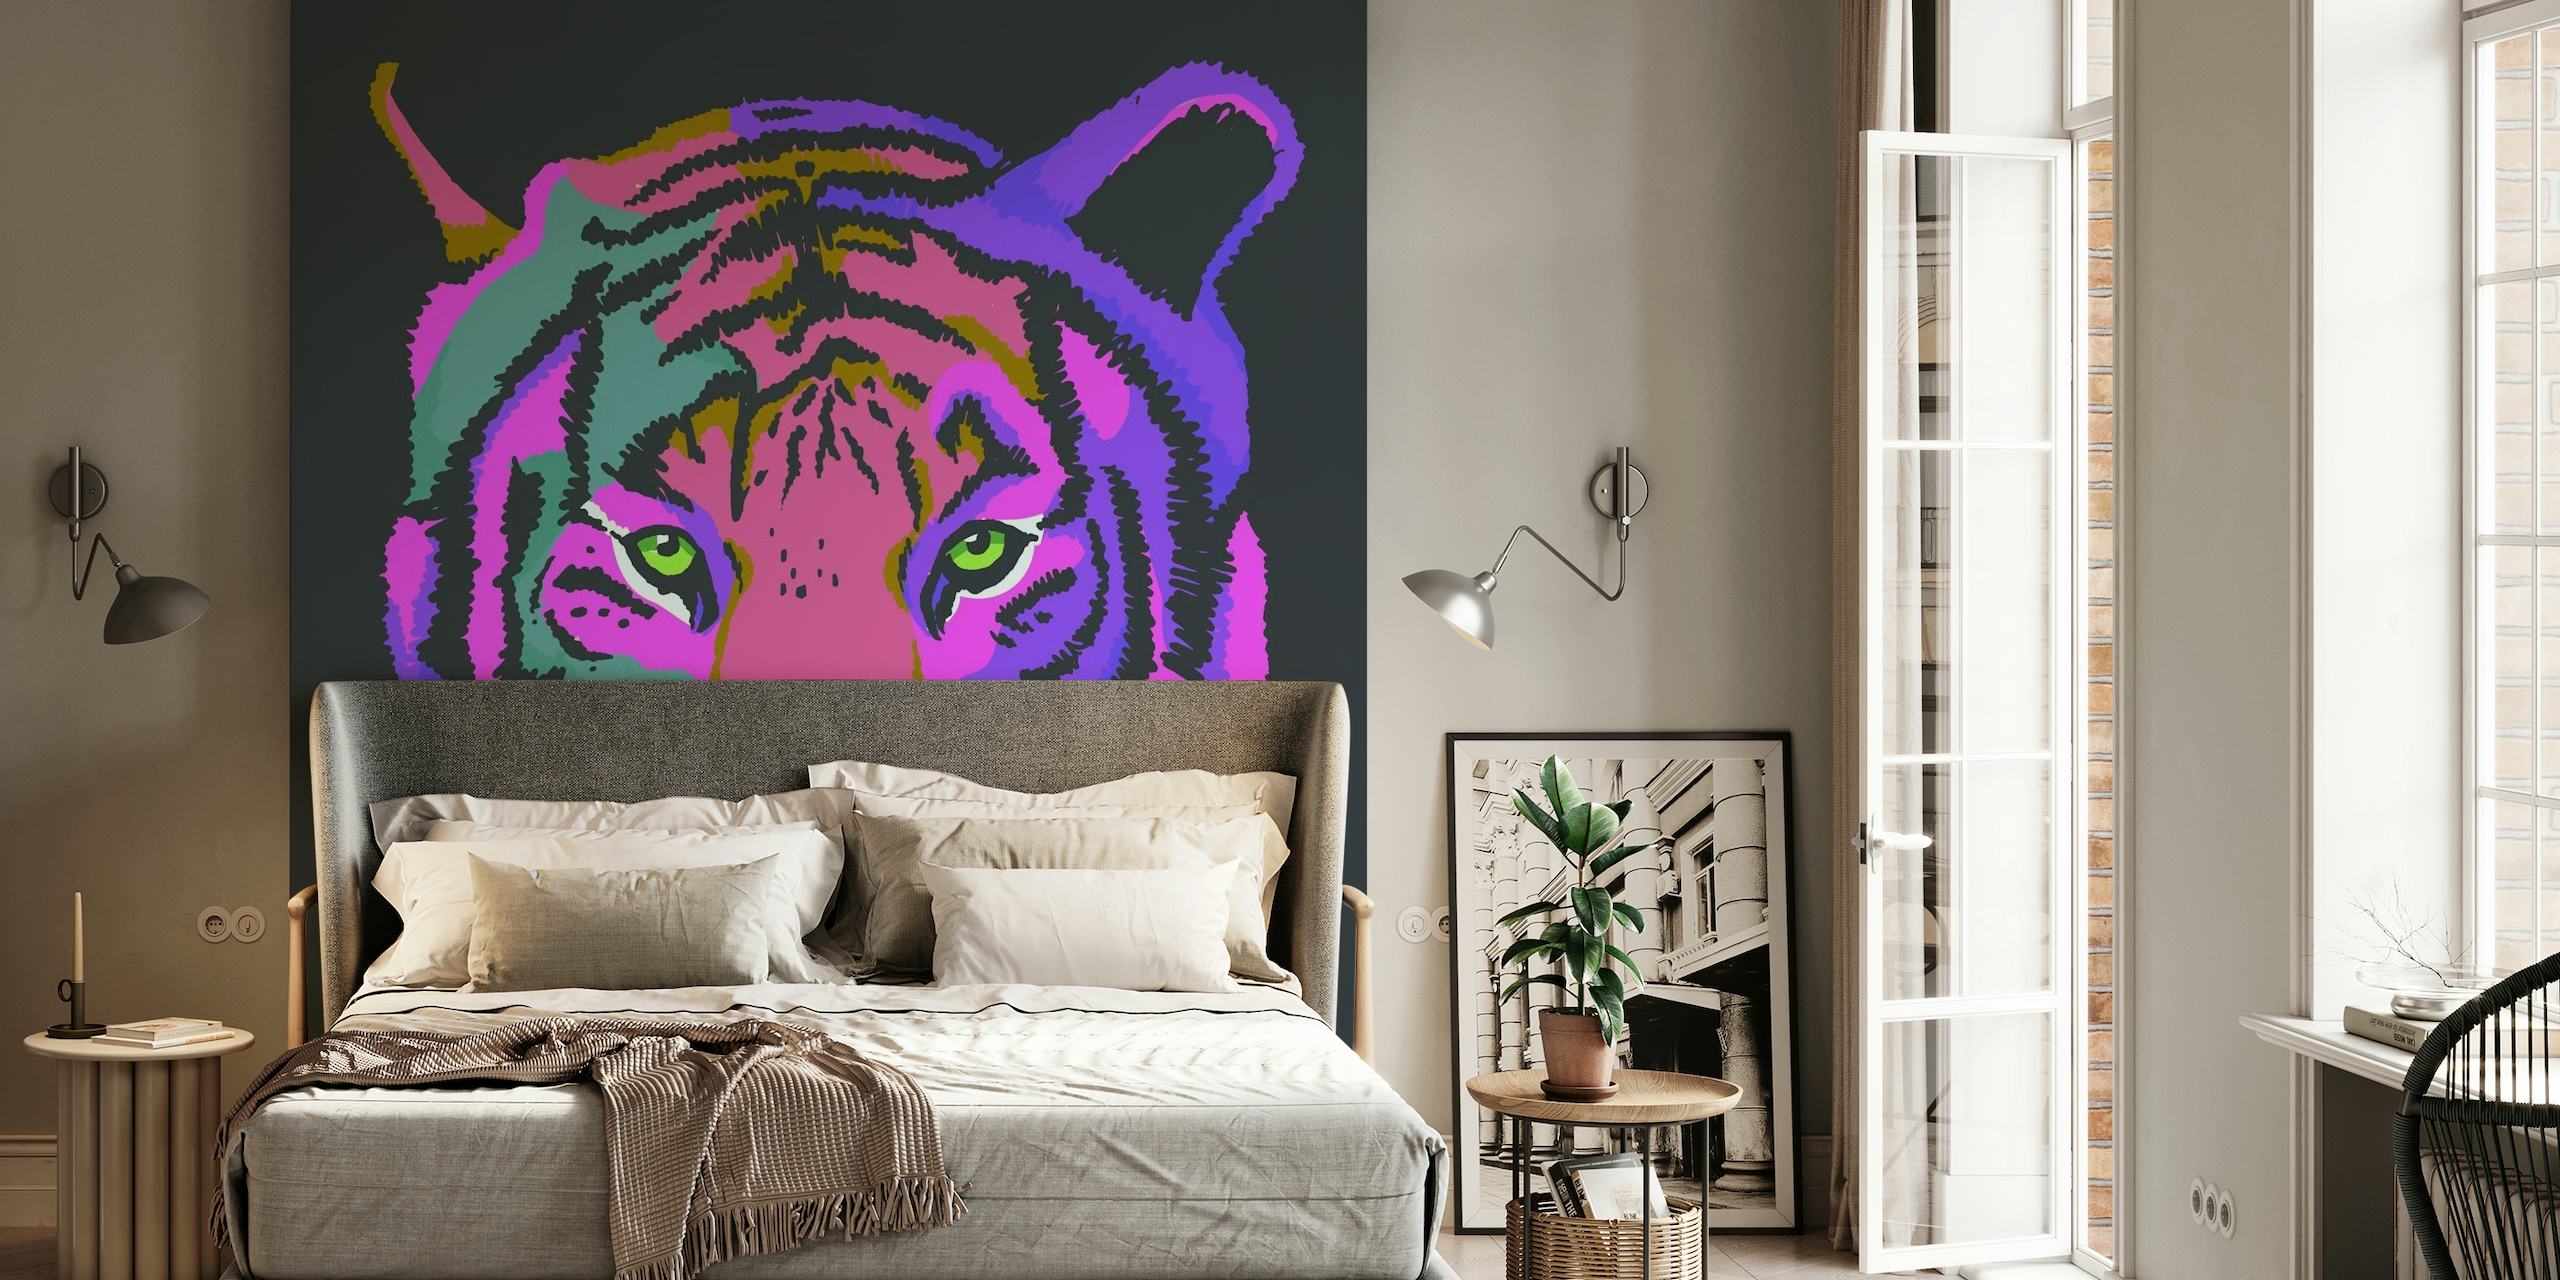 Un colorido mural que presenta un tigre estilizado en tonos violeta y rosa sobre un fondo oscuro.